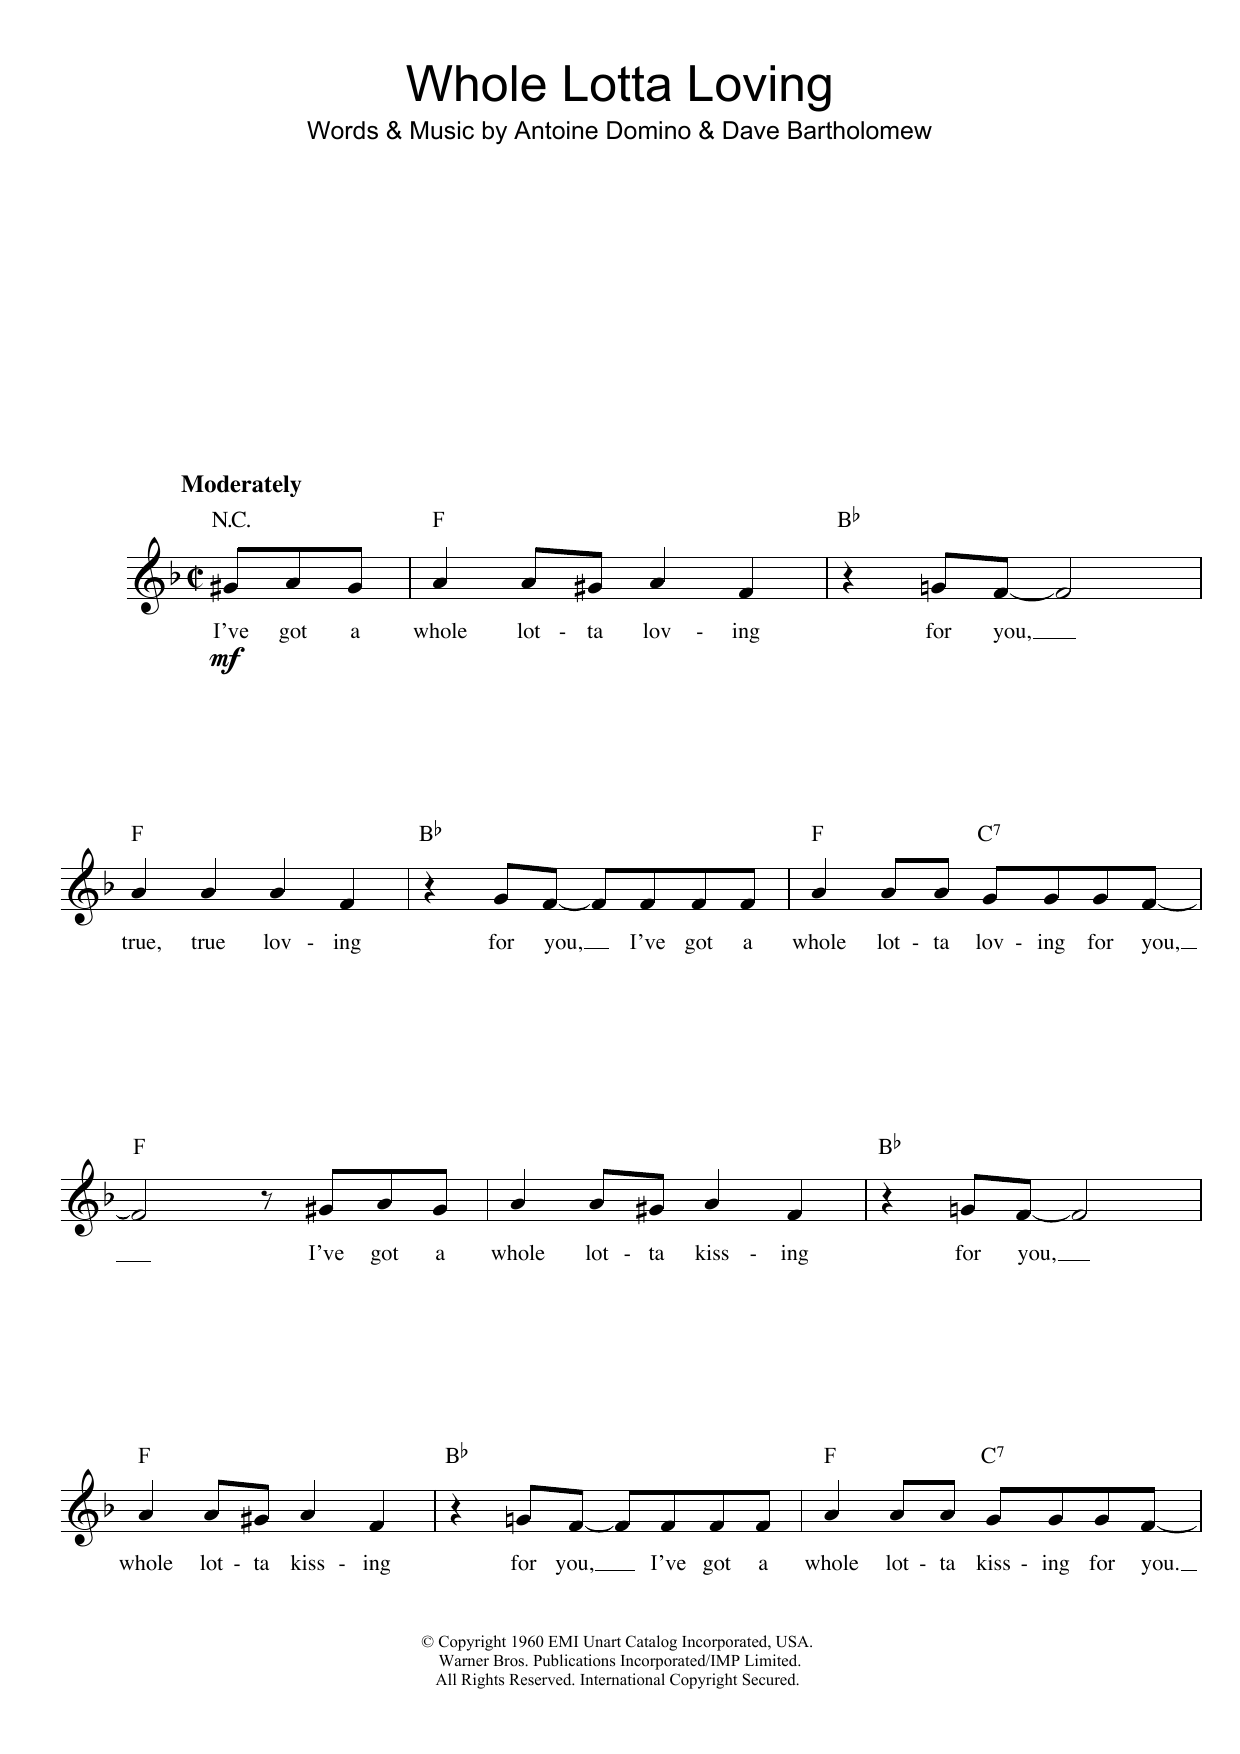 Fats Domino Whole Lotta Loving sheet music notes printable PDF score